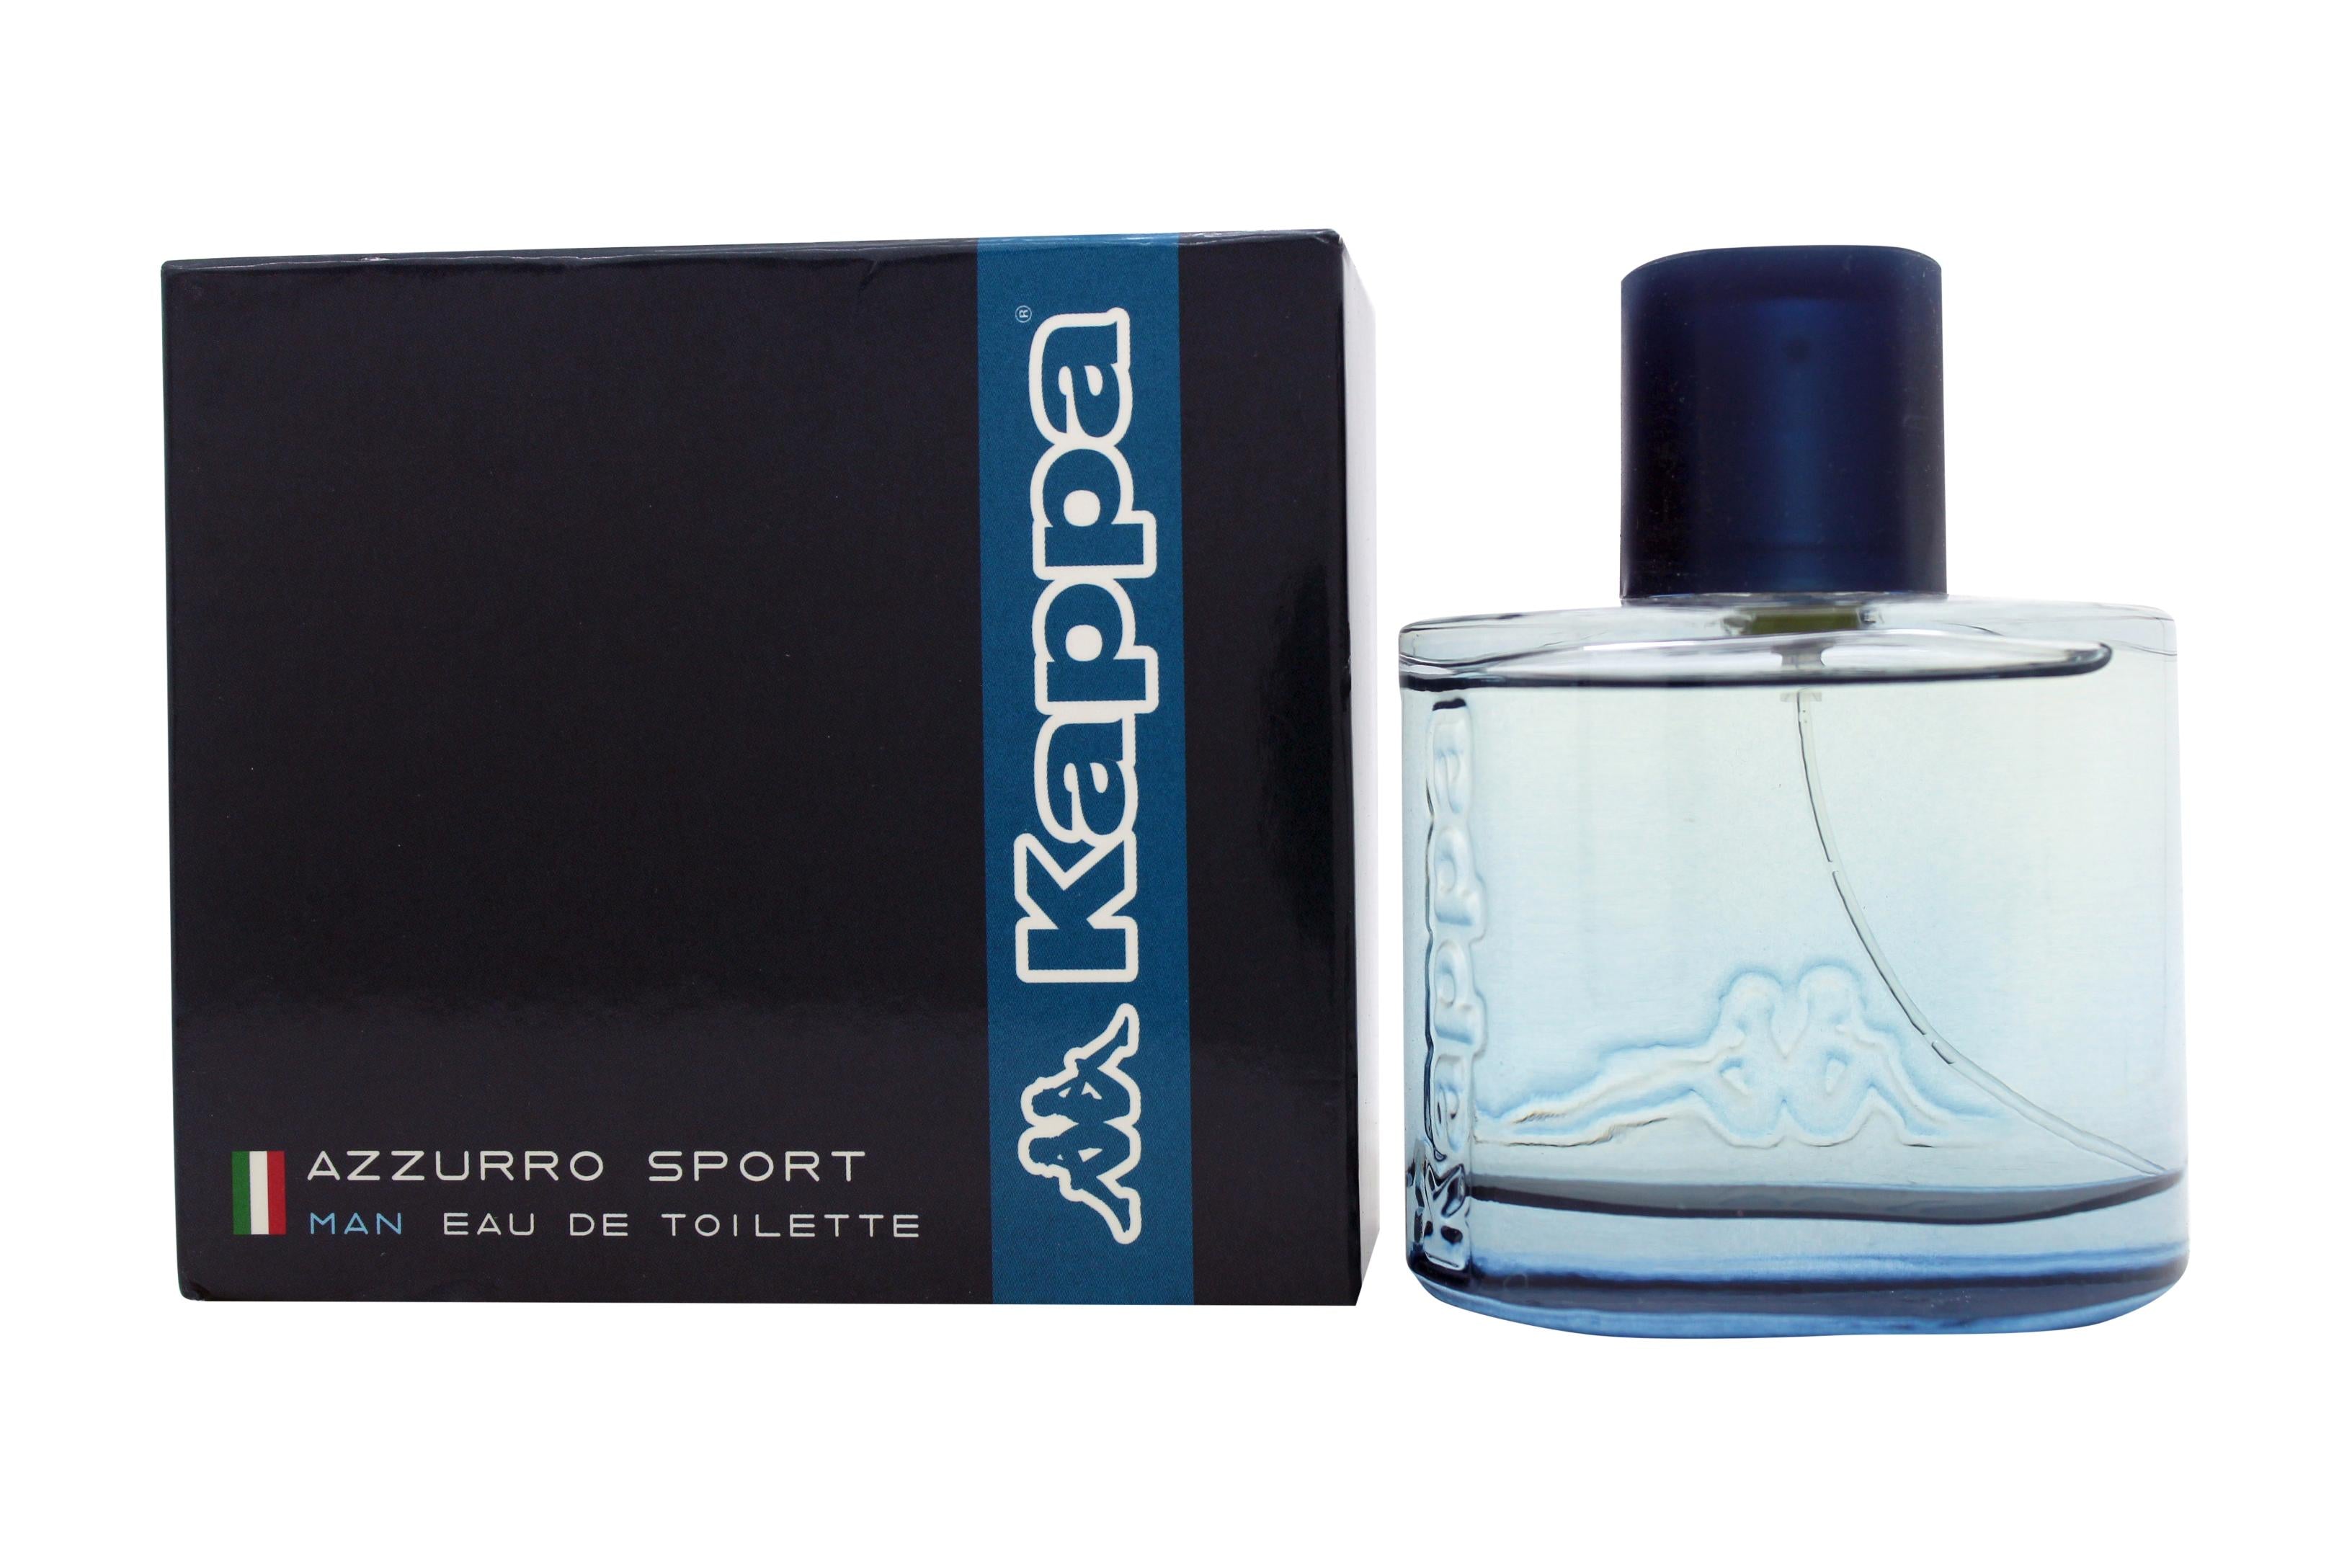 View Kappa Azzurro Sport Eau de Toilette 100ml Spray information